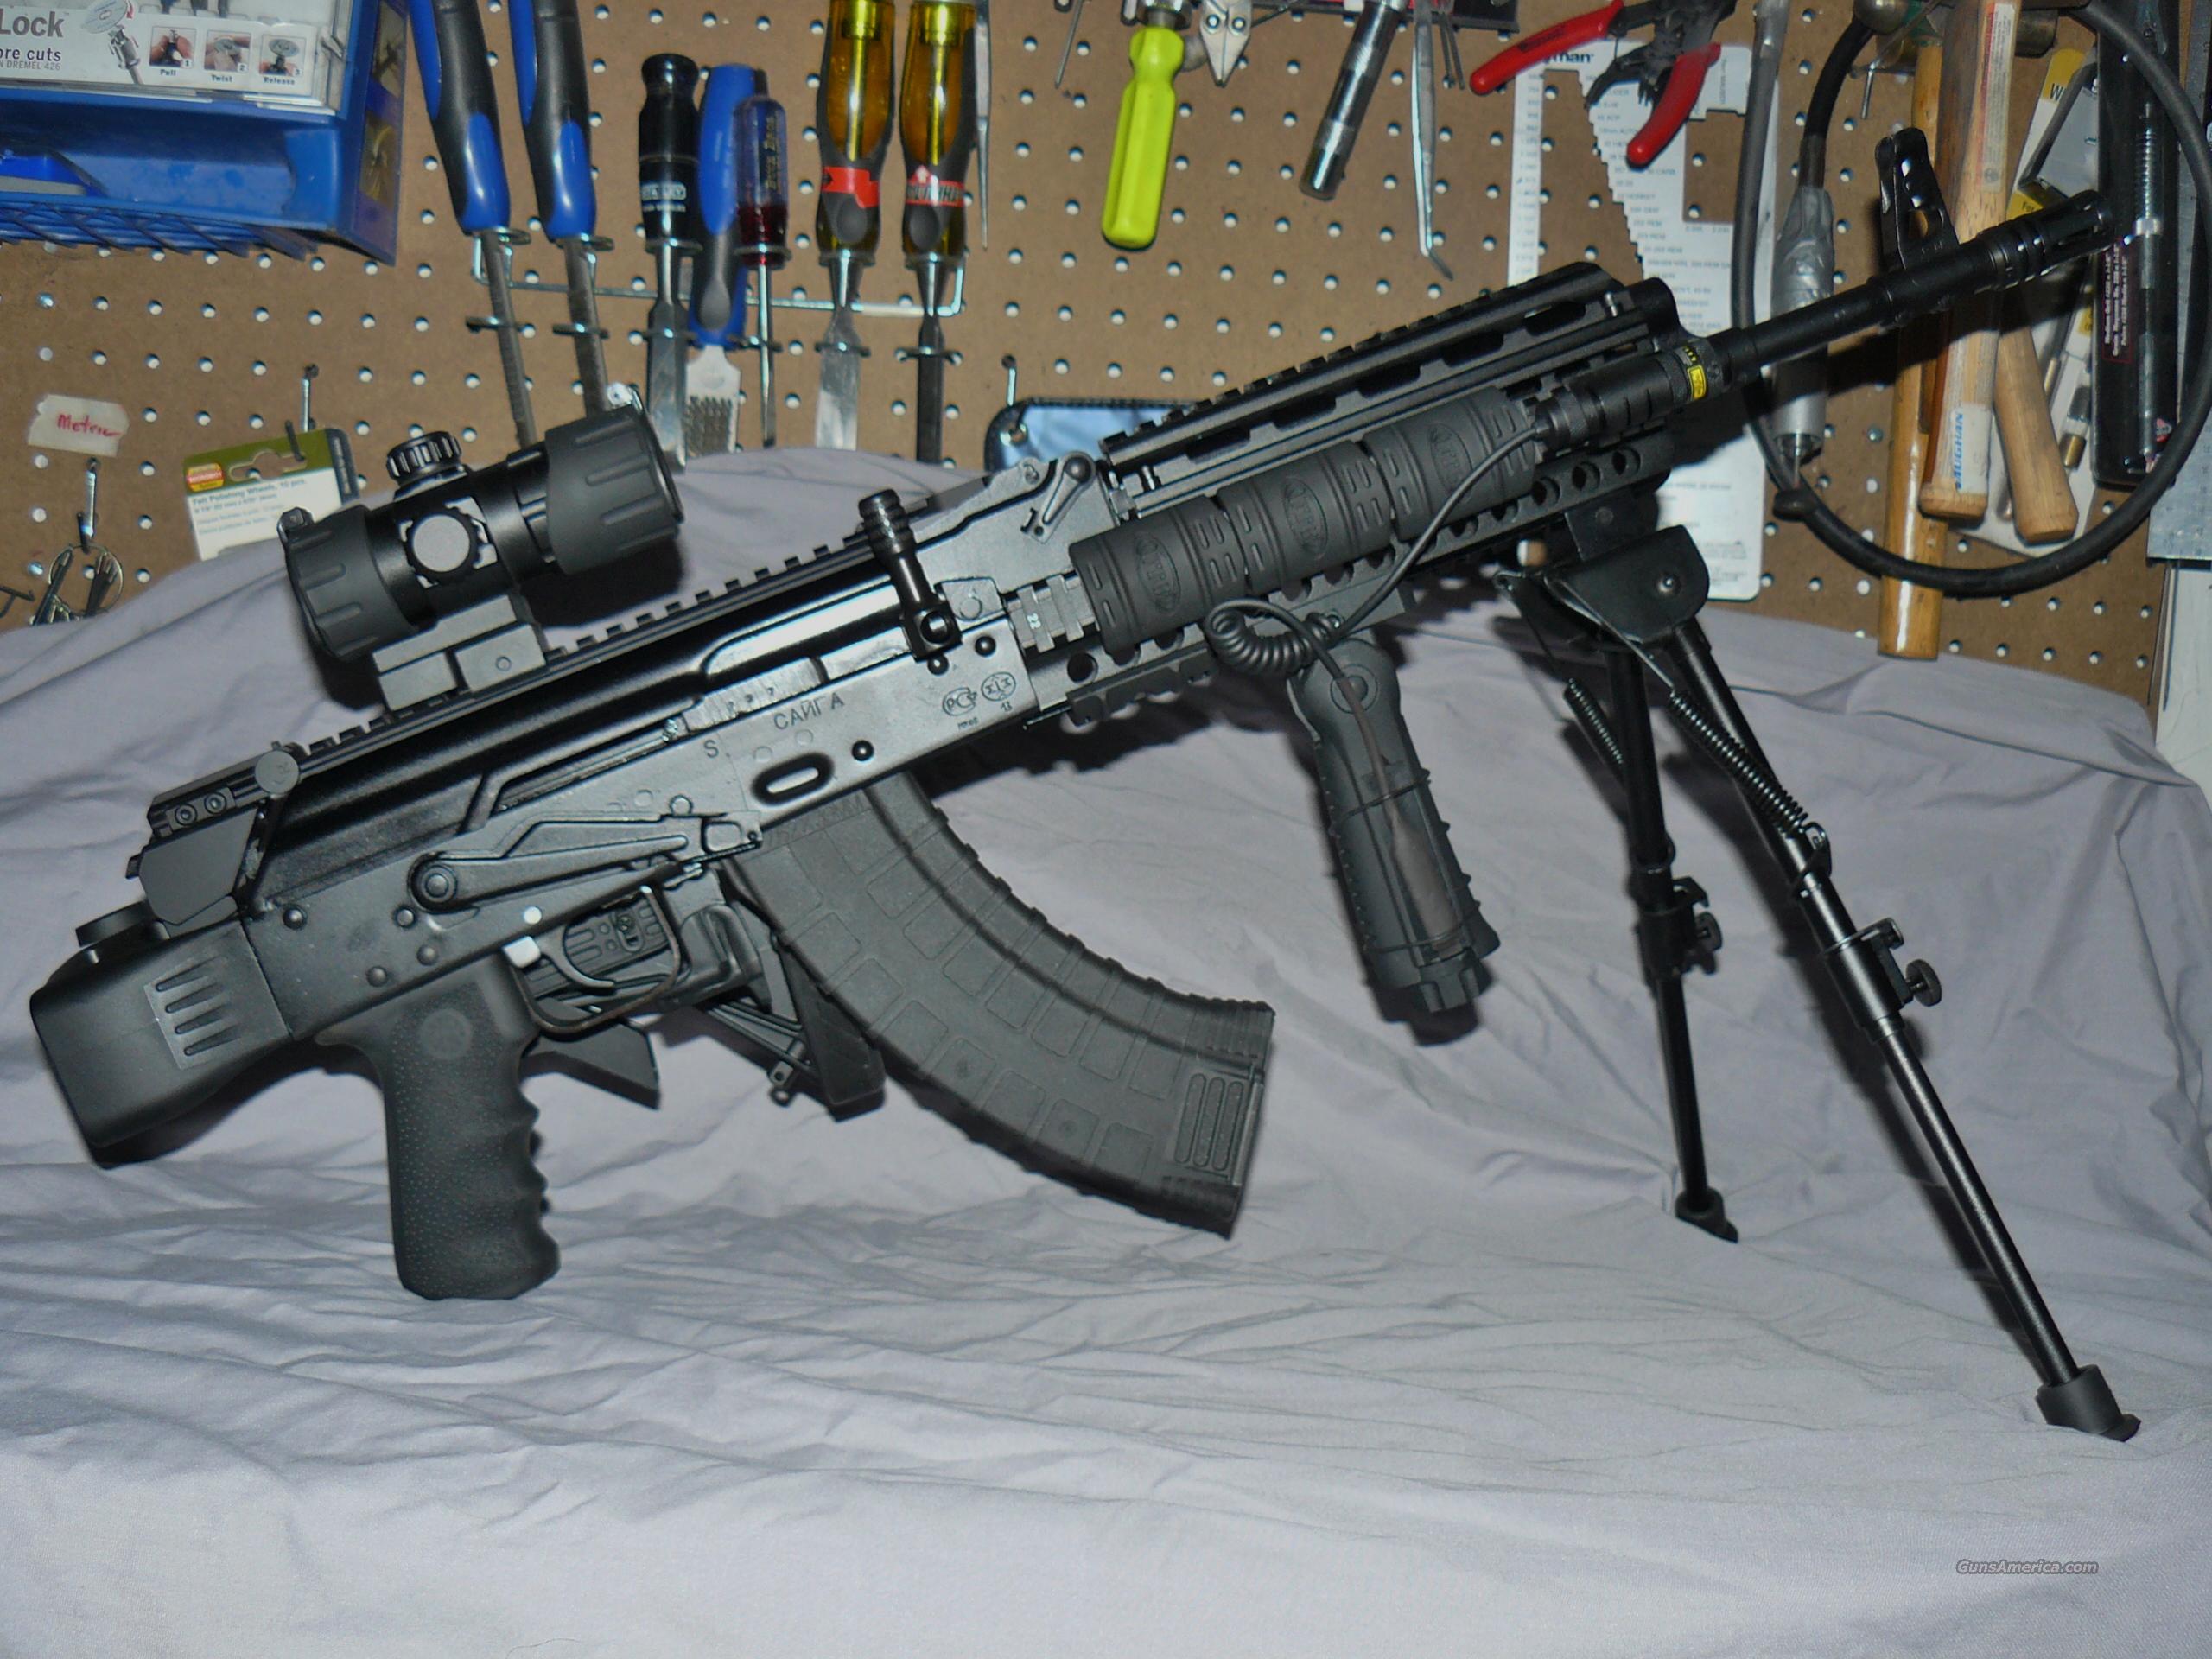 Kalashnikov Media Show Off an Early AK Prototype - The 